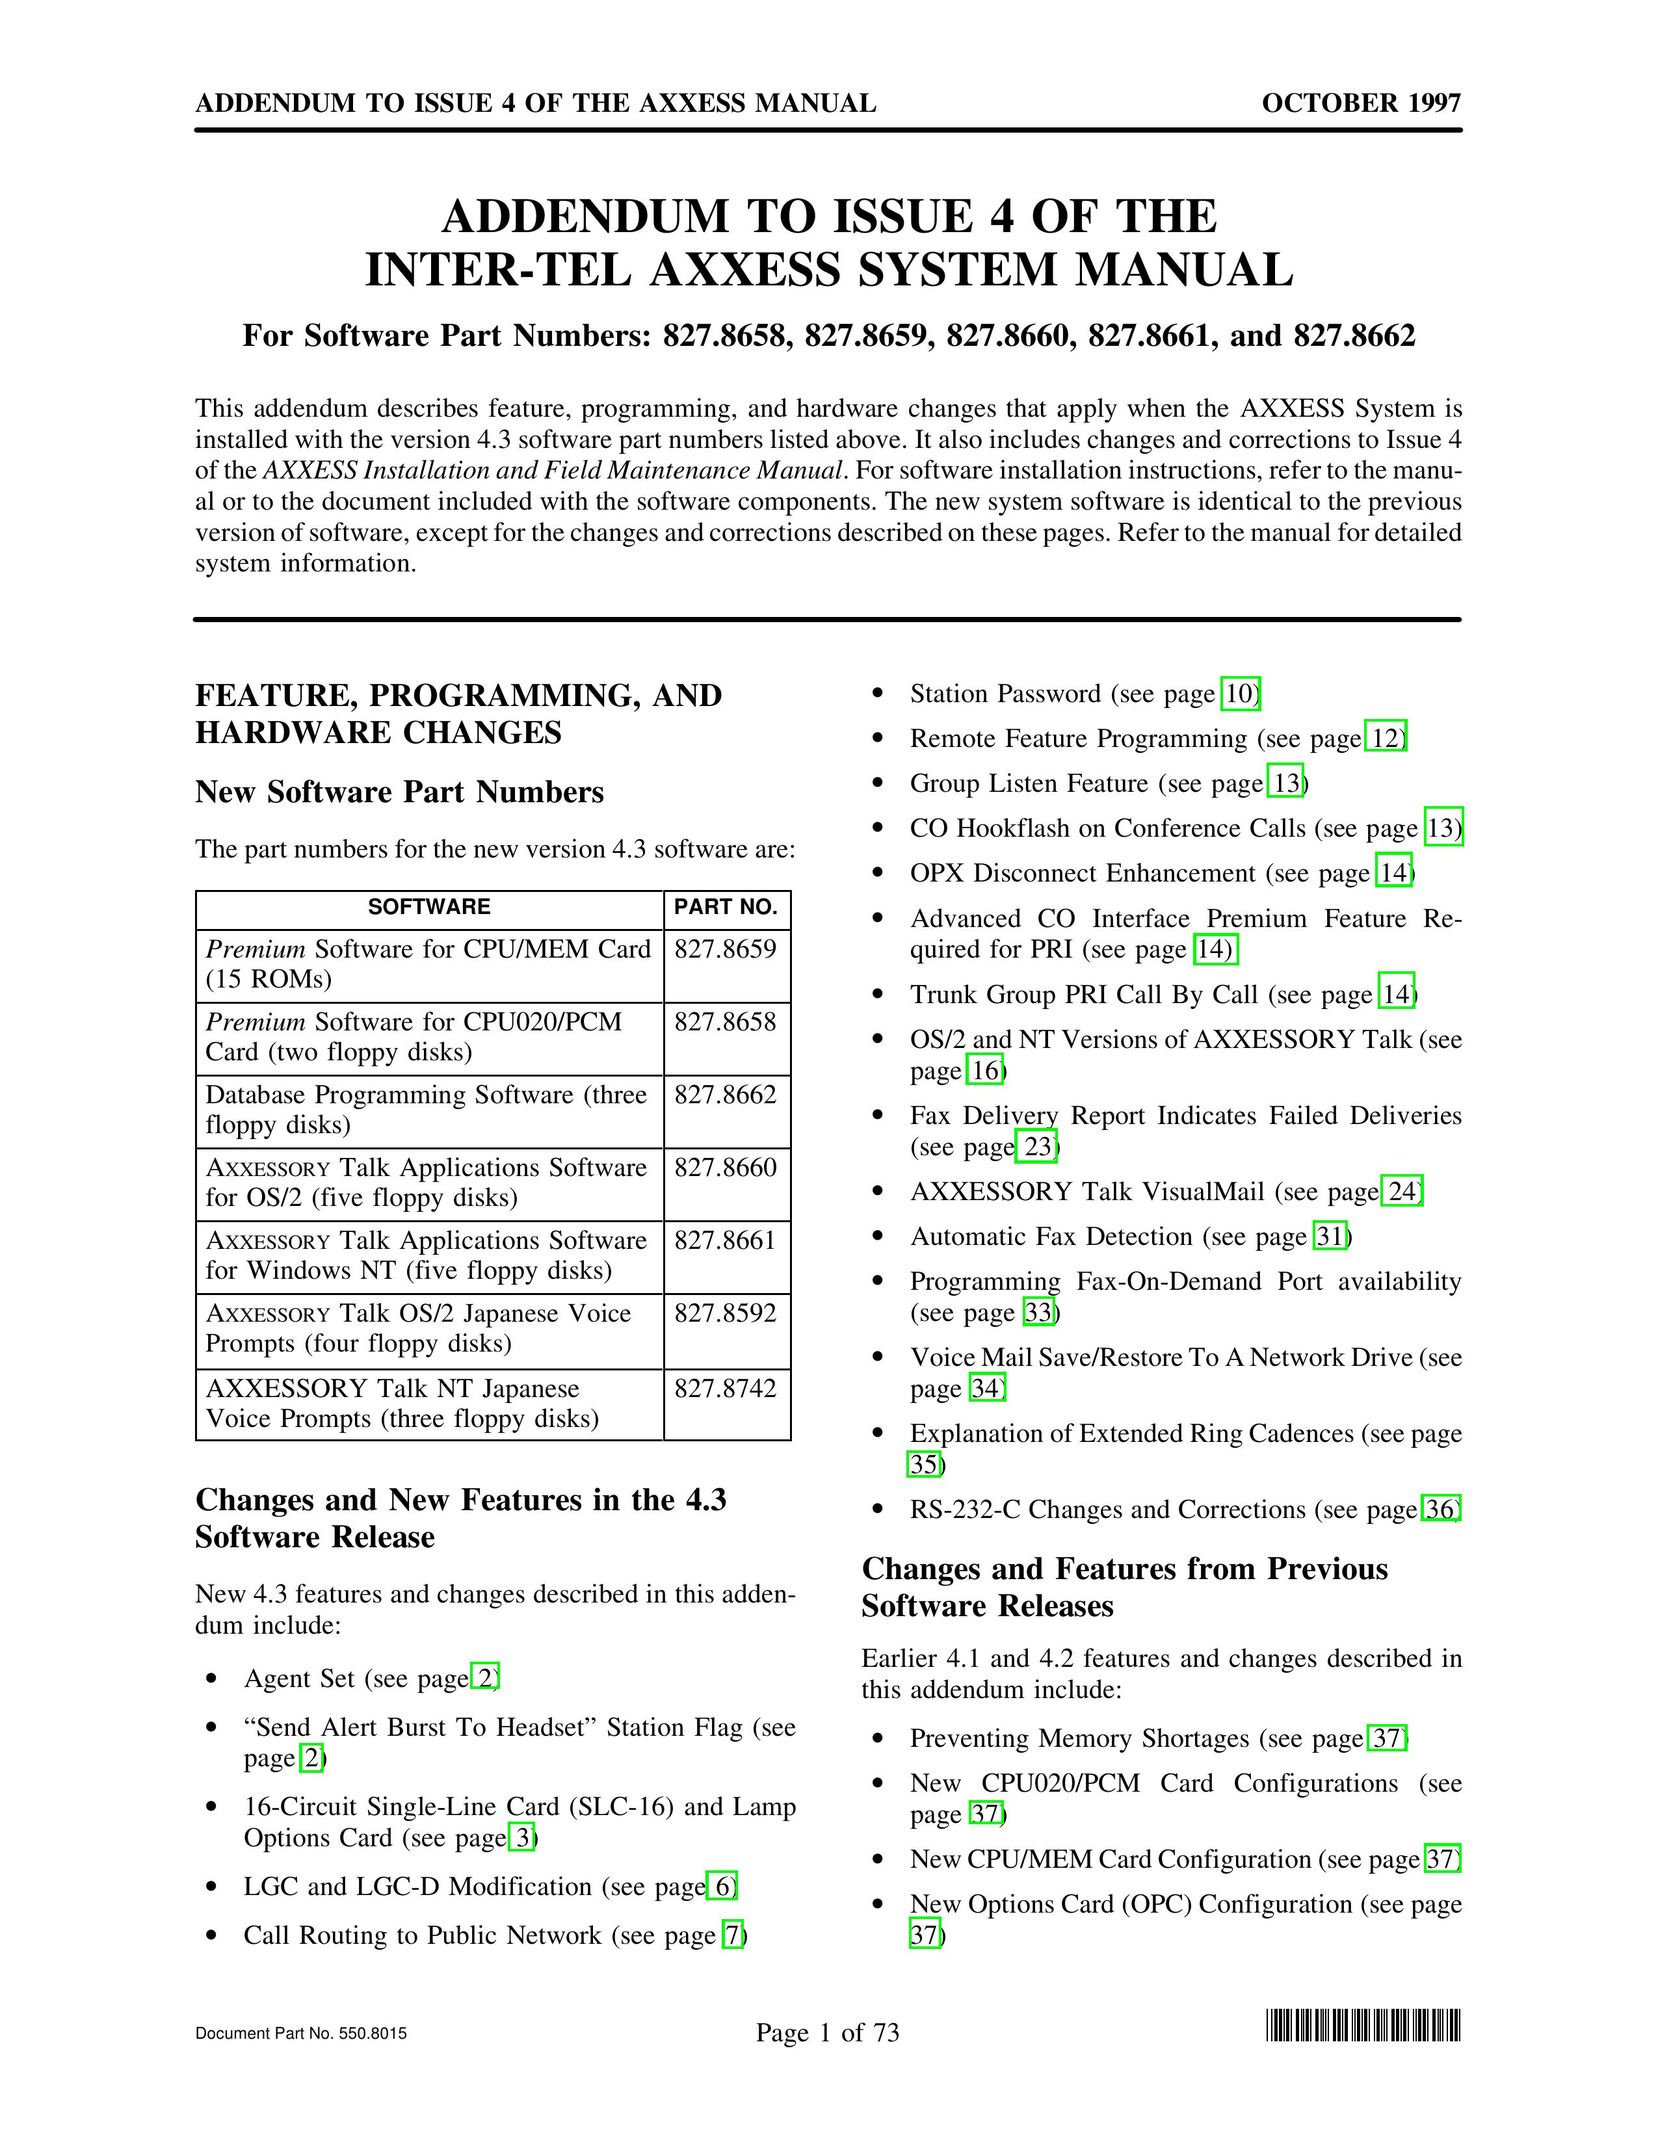 Inter-Tel 827.866 Telephone User Manual